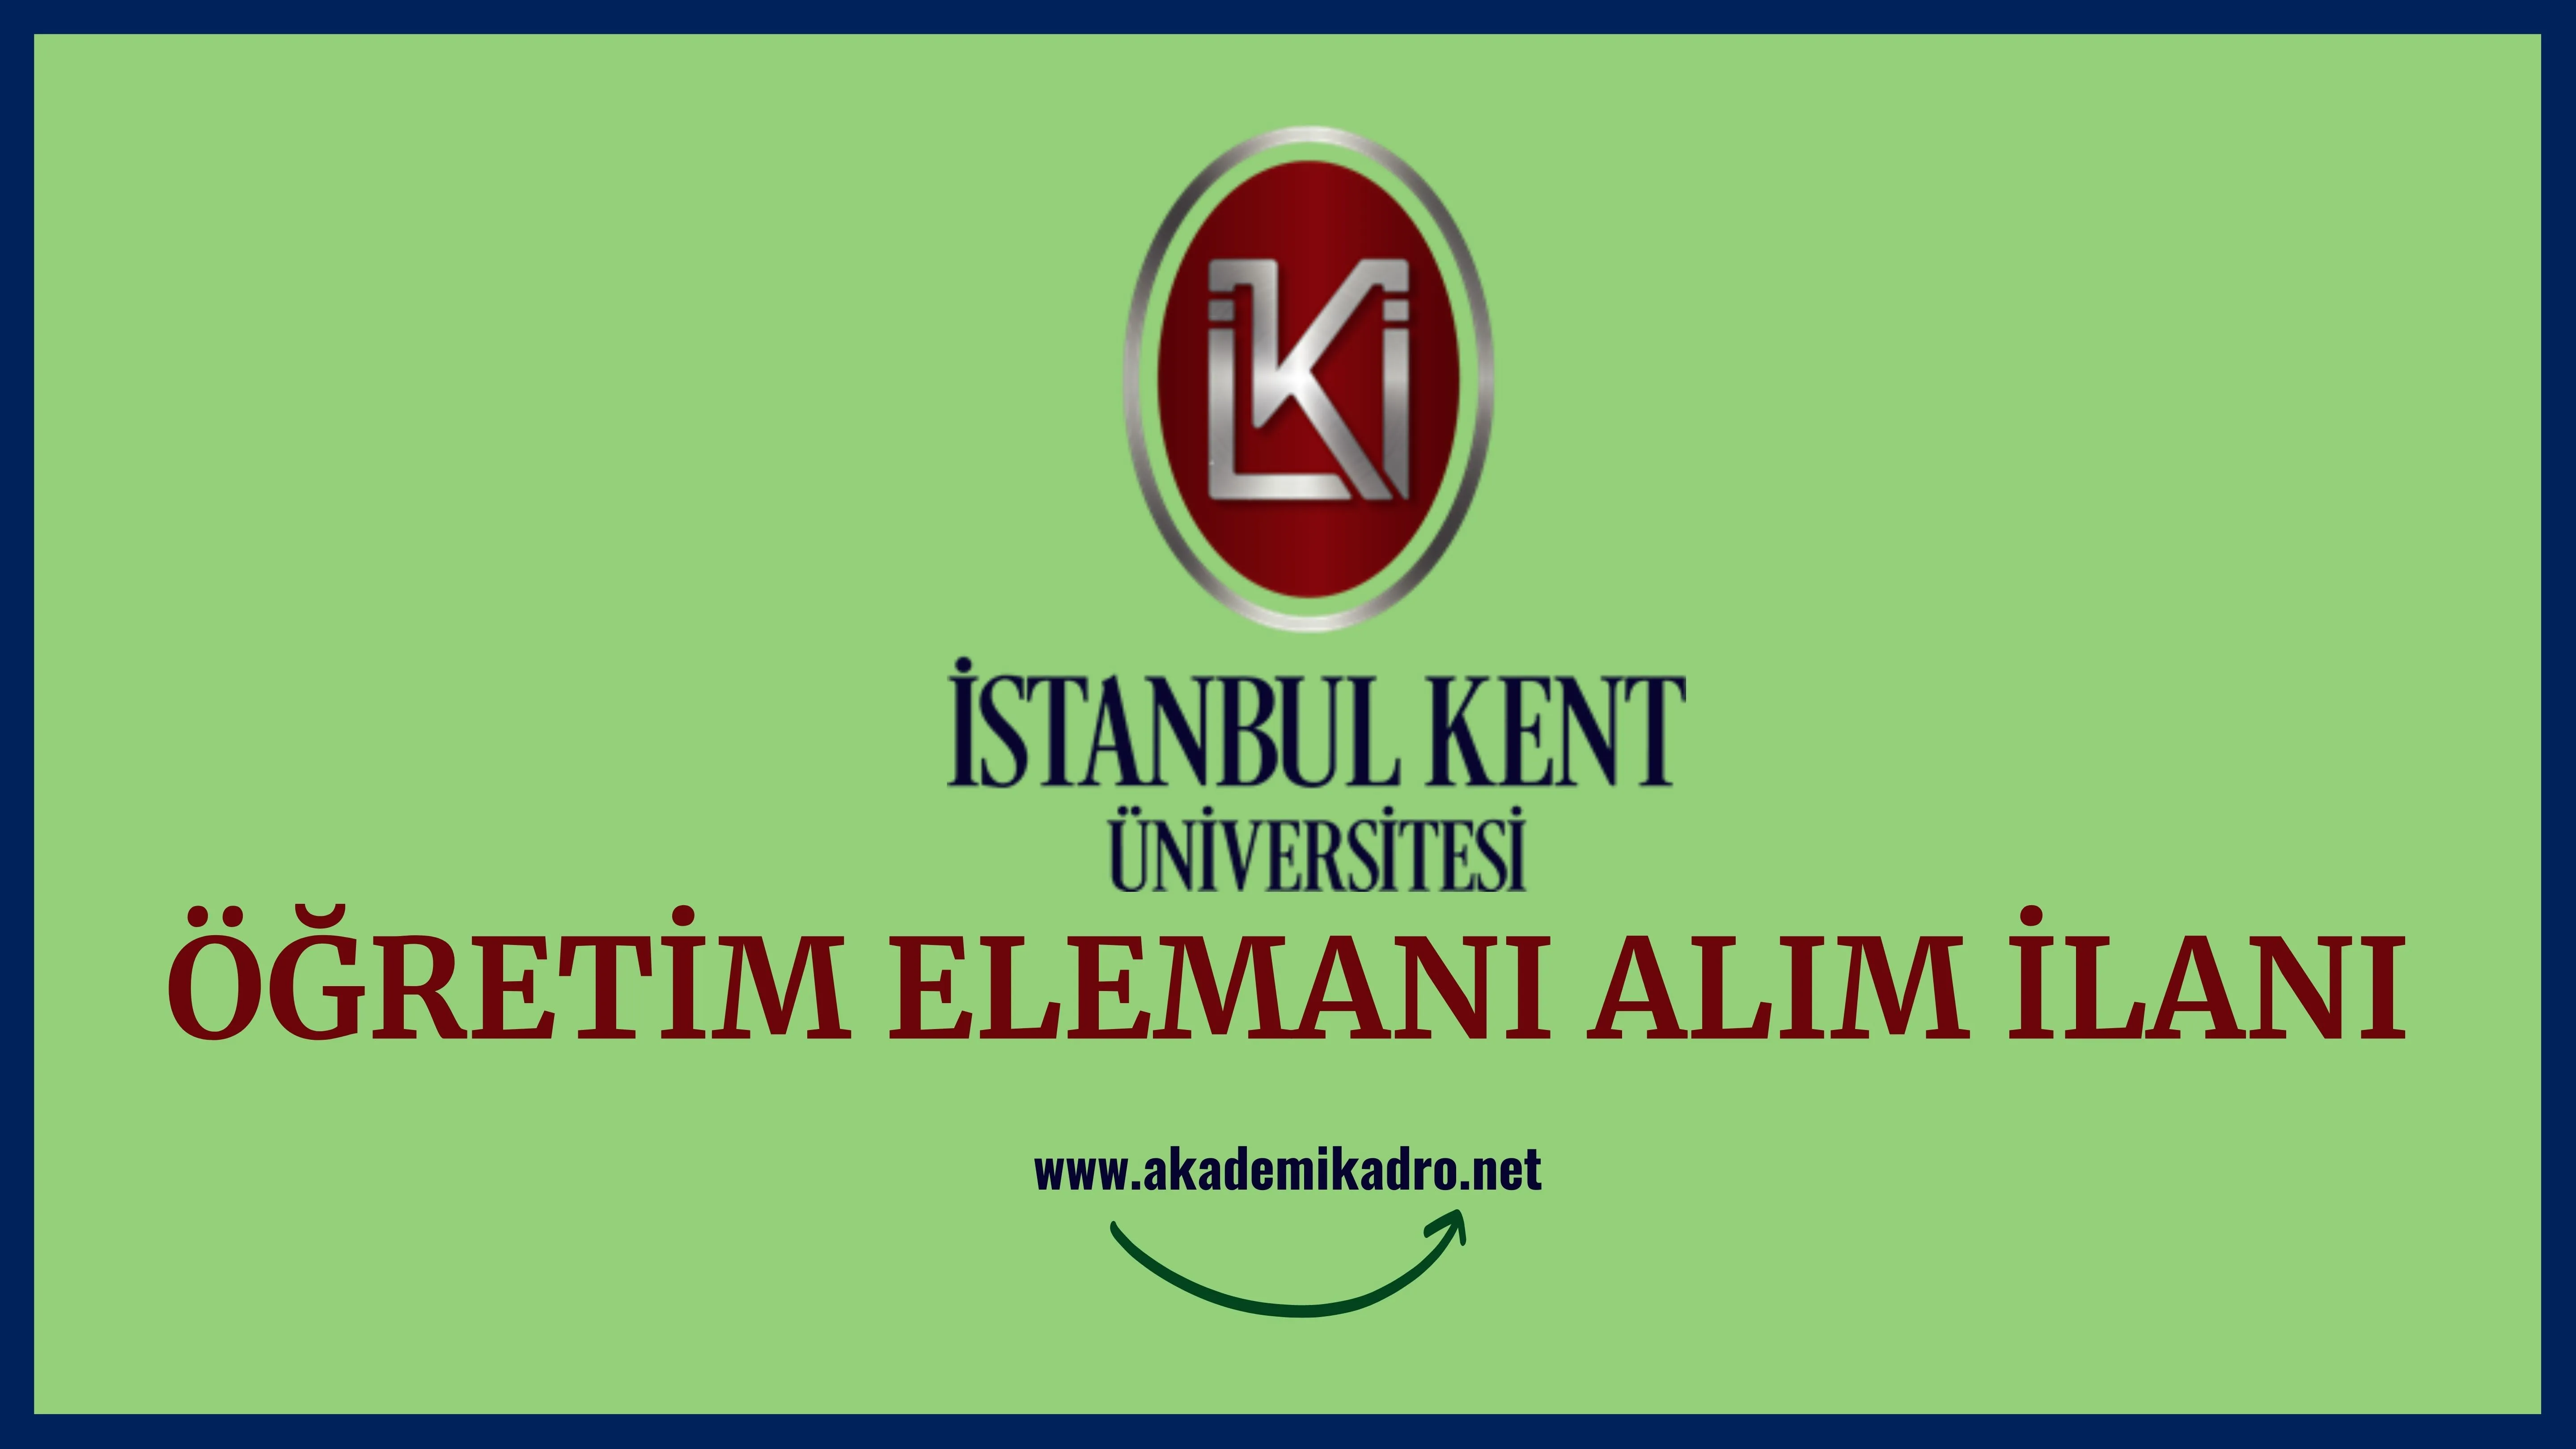 İstanbul Kent Üniversitesi Araştırma görevlisi, Öğretim görevlisi ve Öğretim üyesi olmak üzere 39 Öğretim elemanı alacak.